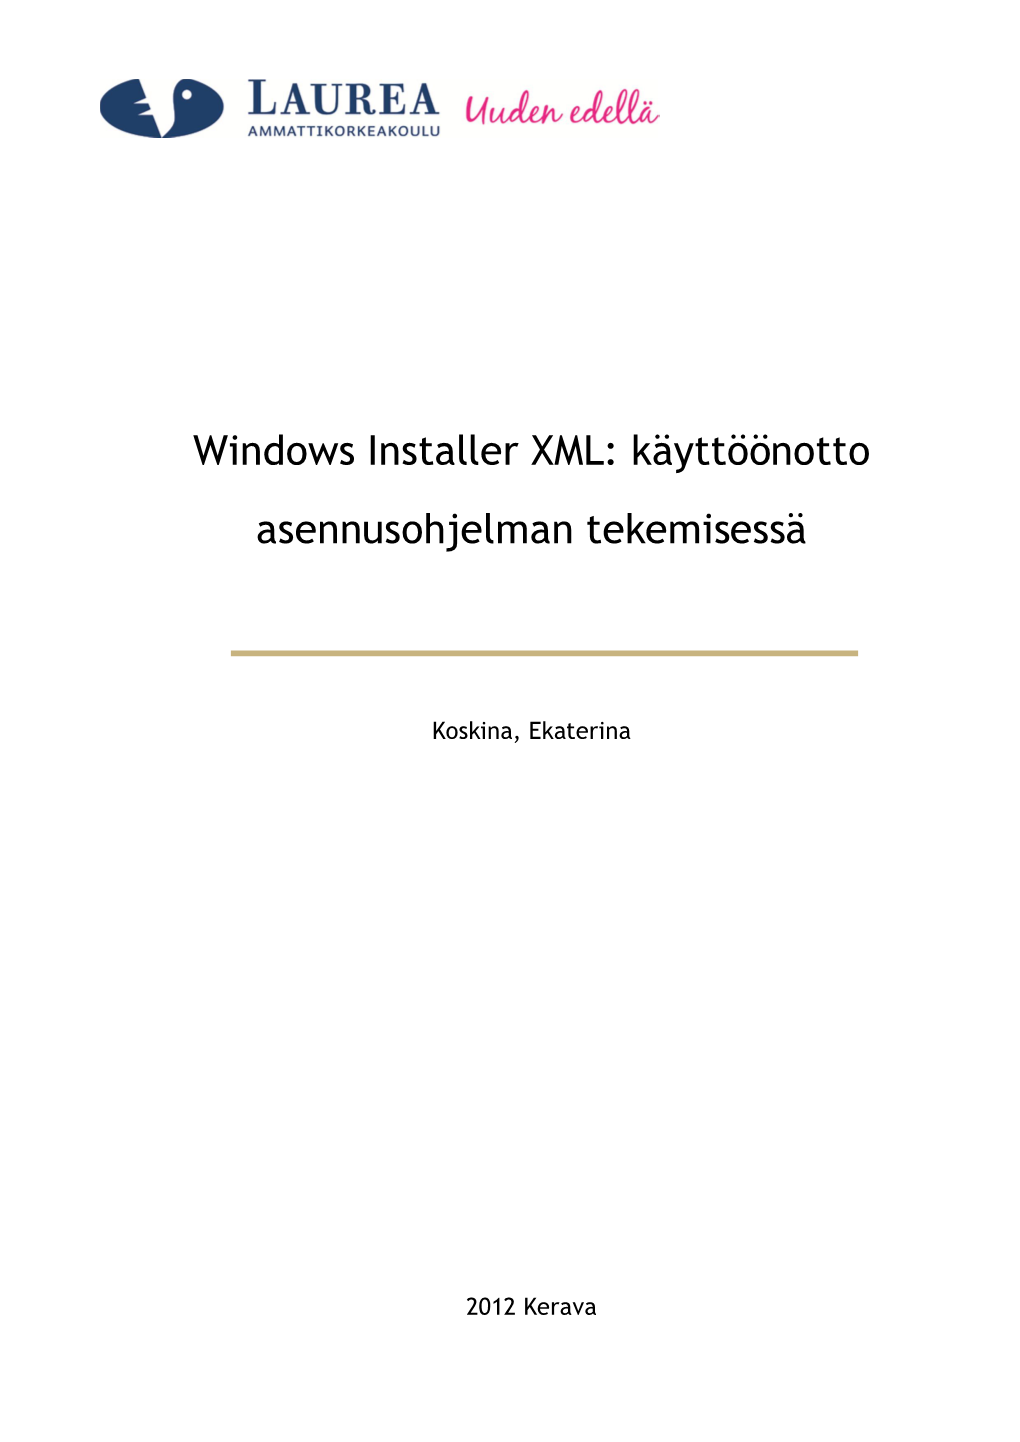 Windows Installer XML: Käyttöönotto Asennusohjelman Tekemisessä